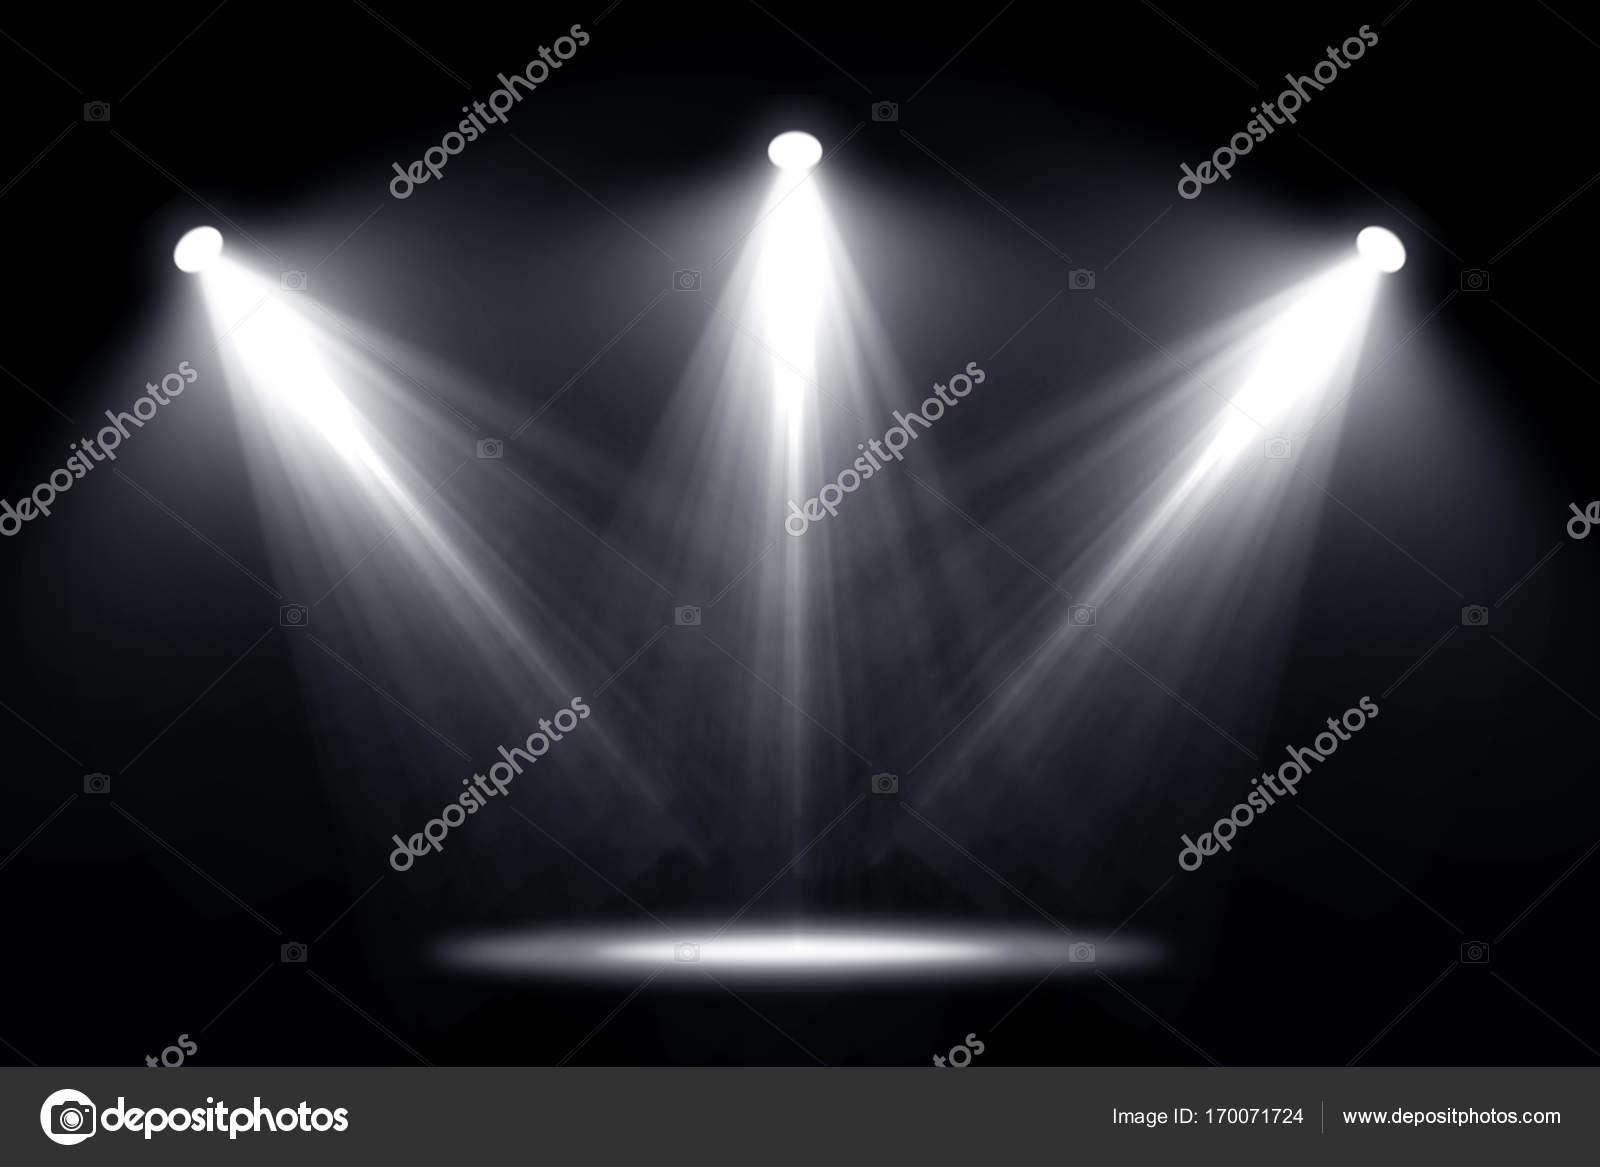 Spotlights light on black background. Stock Photo by ©releon8211 170071724